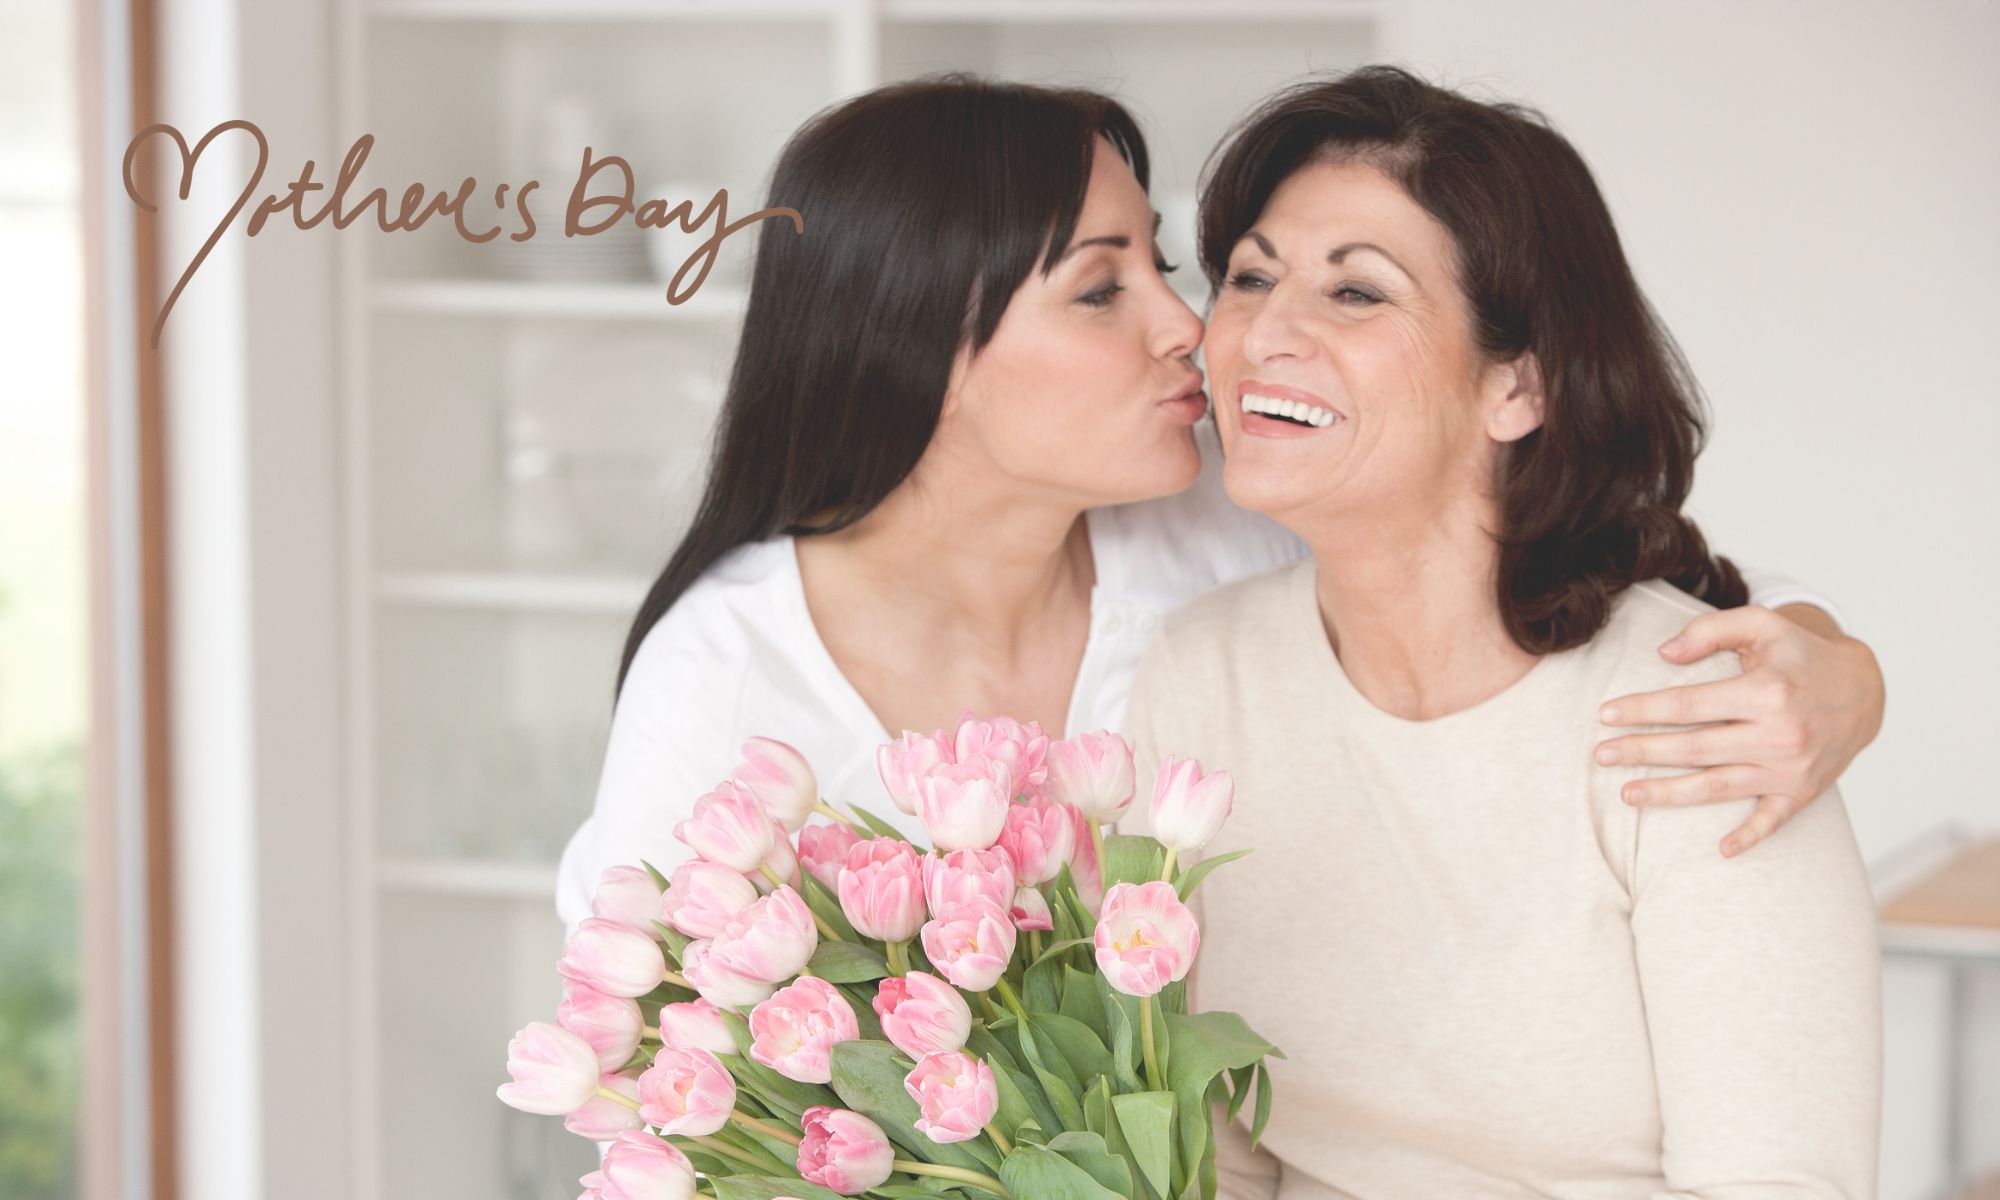 Belledor Vineyards Mother's Day Blog